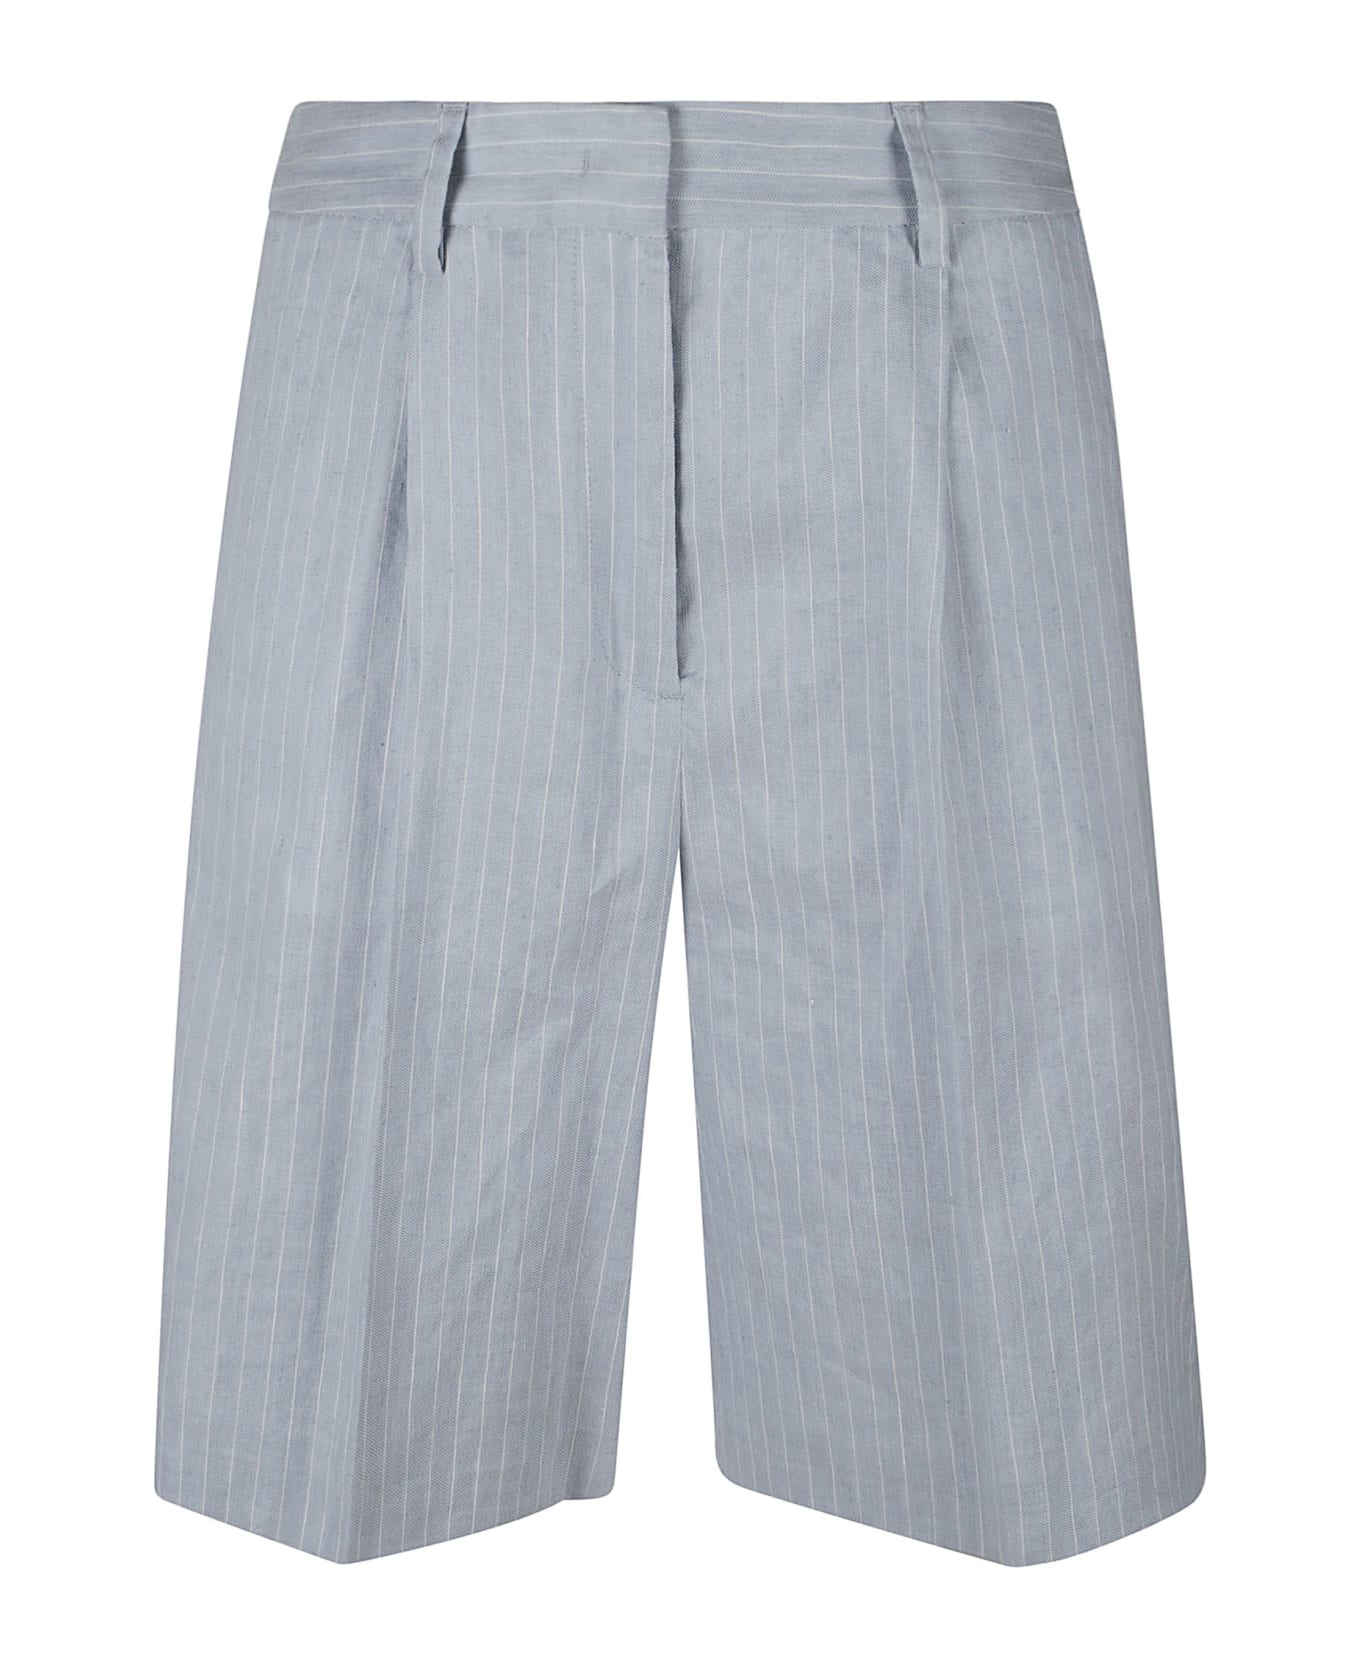 Iceberg Classic Striped Trouser Shorts - Rigato bia/azz